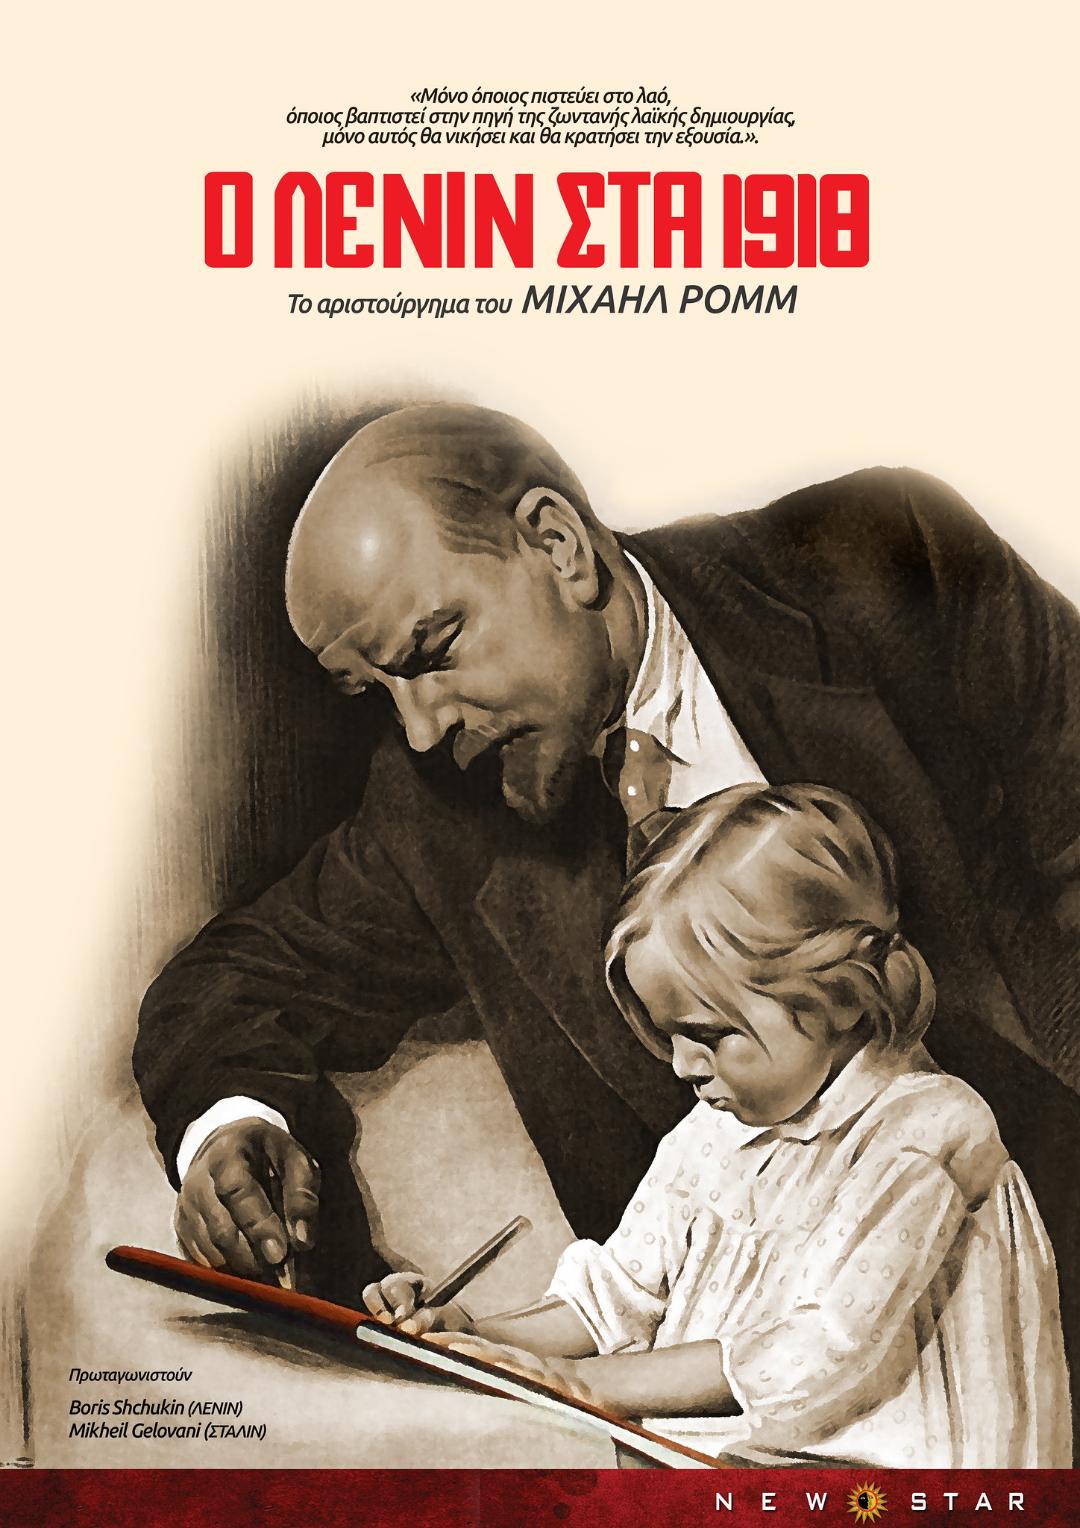 Ленин в 1918 году 1939 года. Ленин в 1918 году. Ленин в 1918 году 1939.